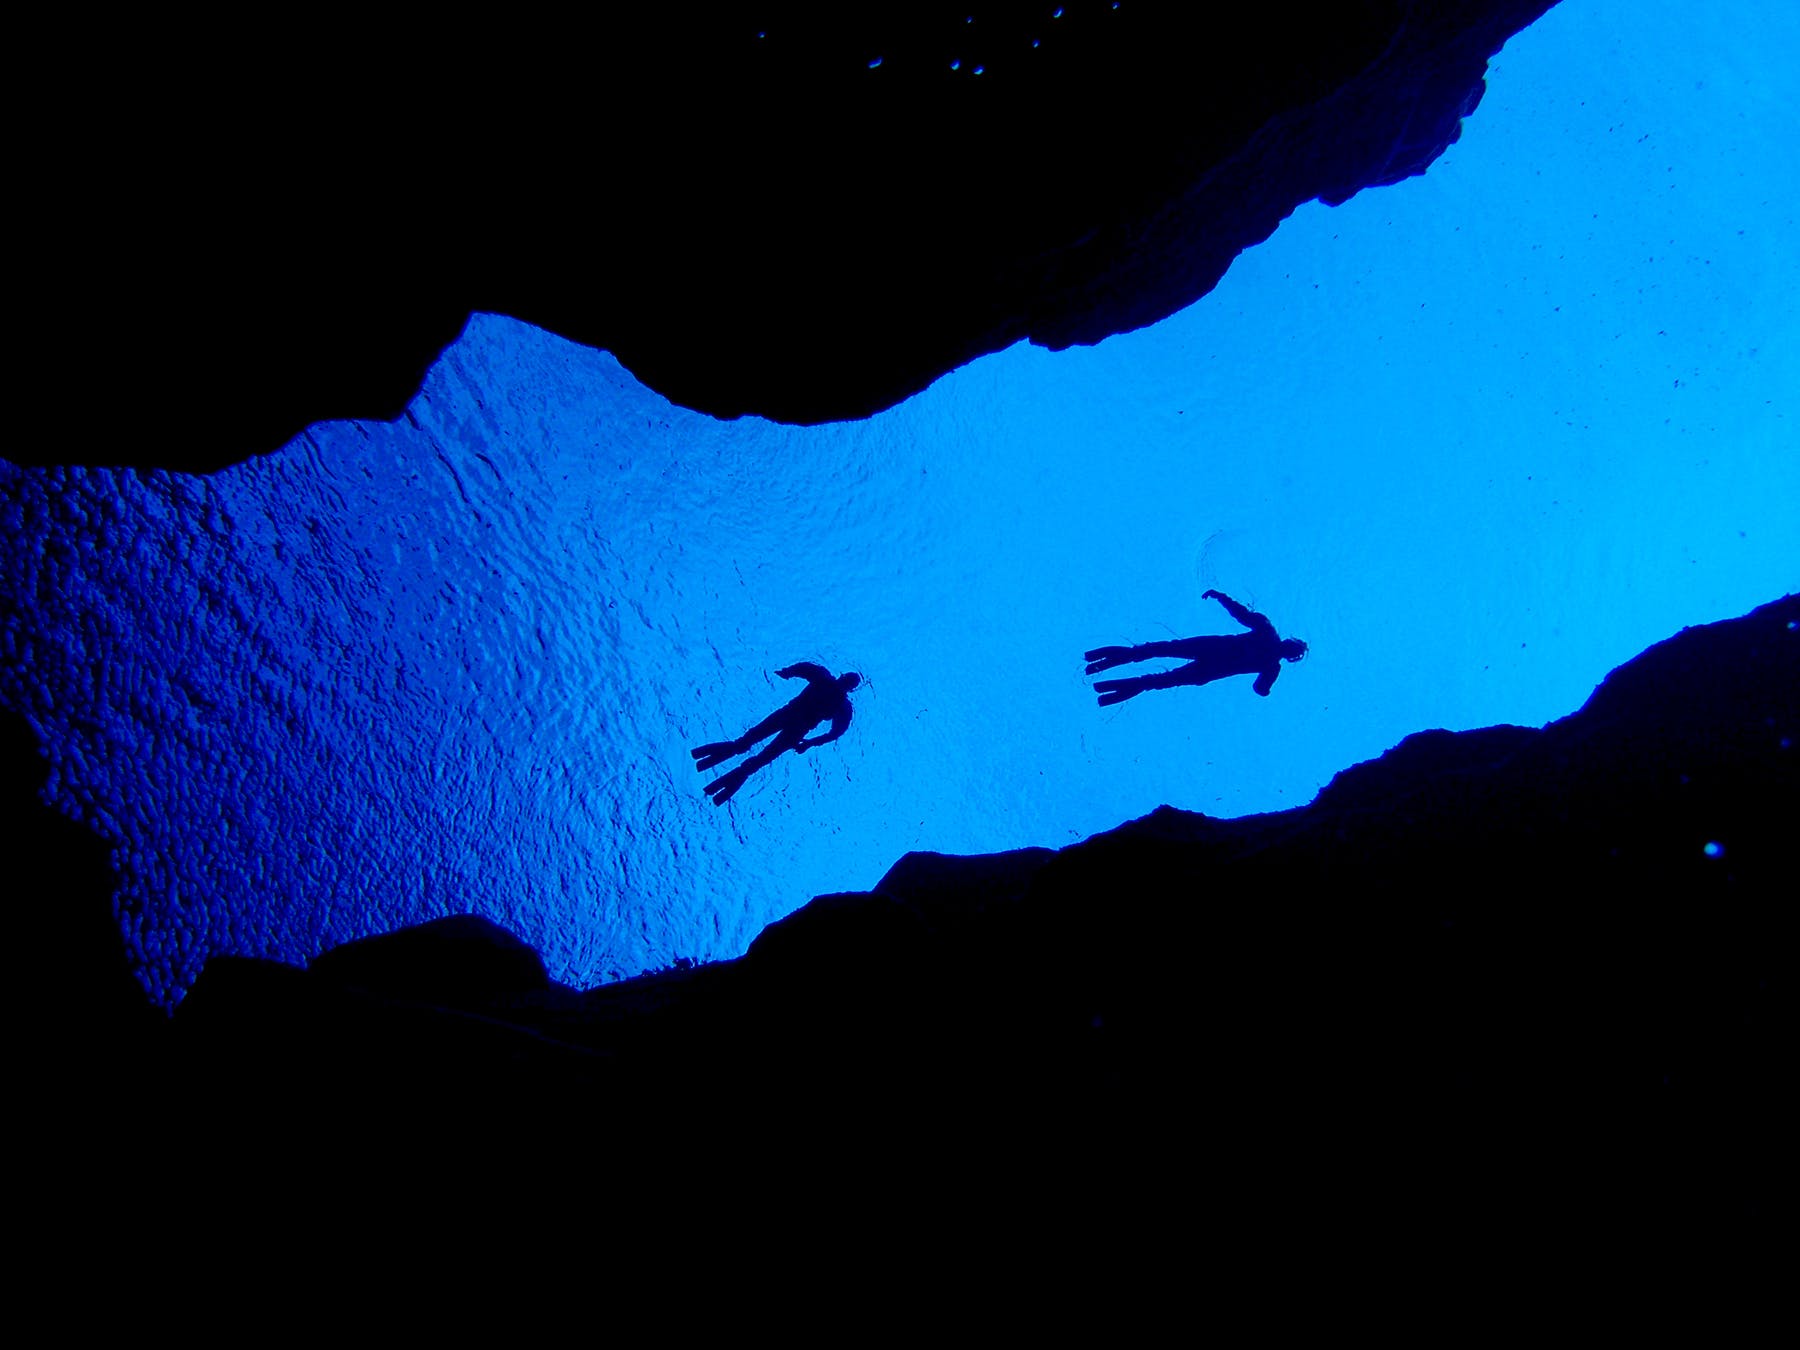 冰岛丝浮拉大裂缝是举世闻名的浮潜与潜水胜地